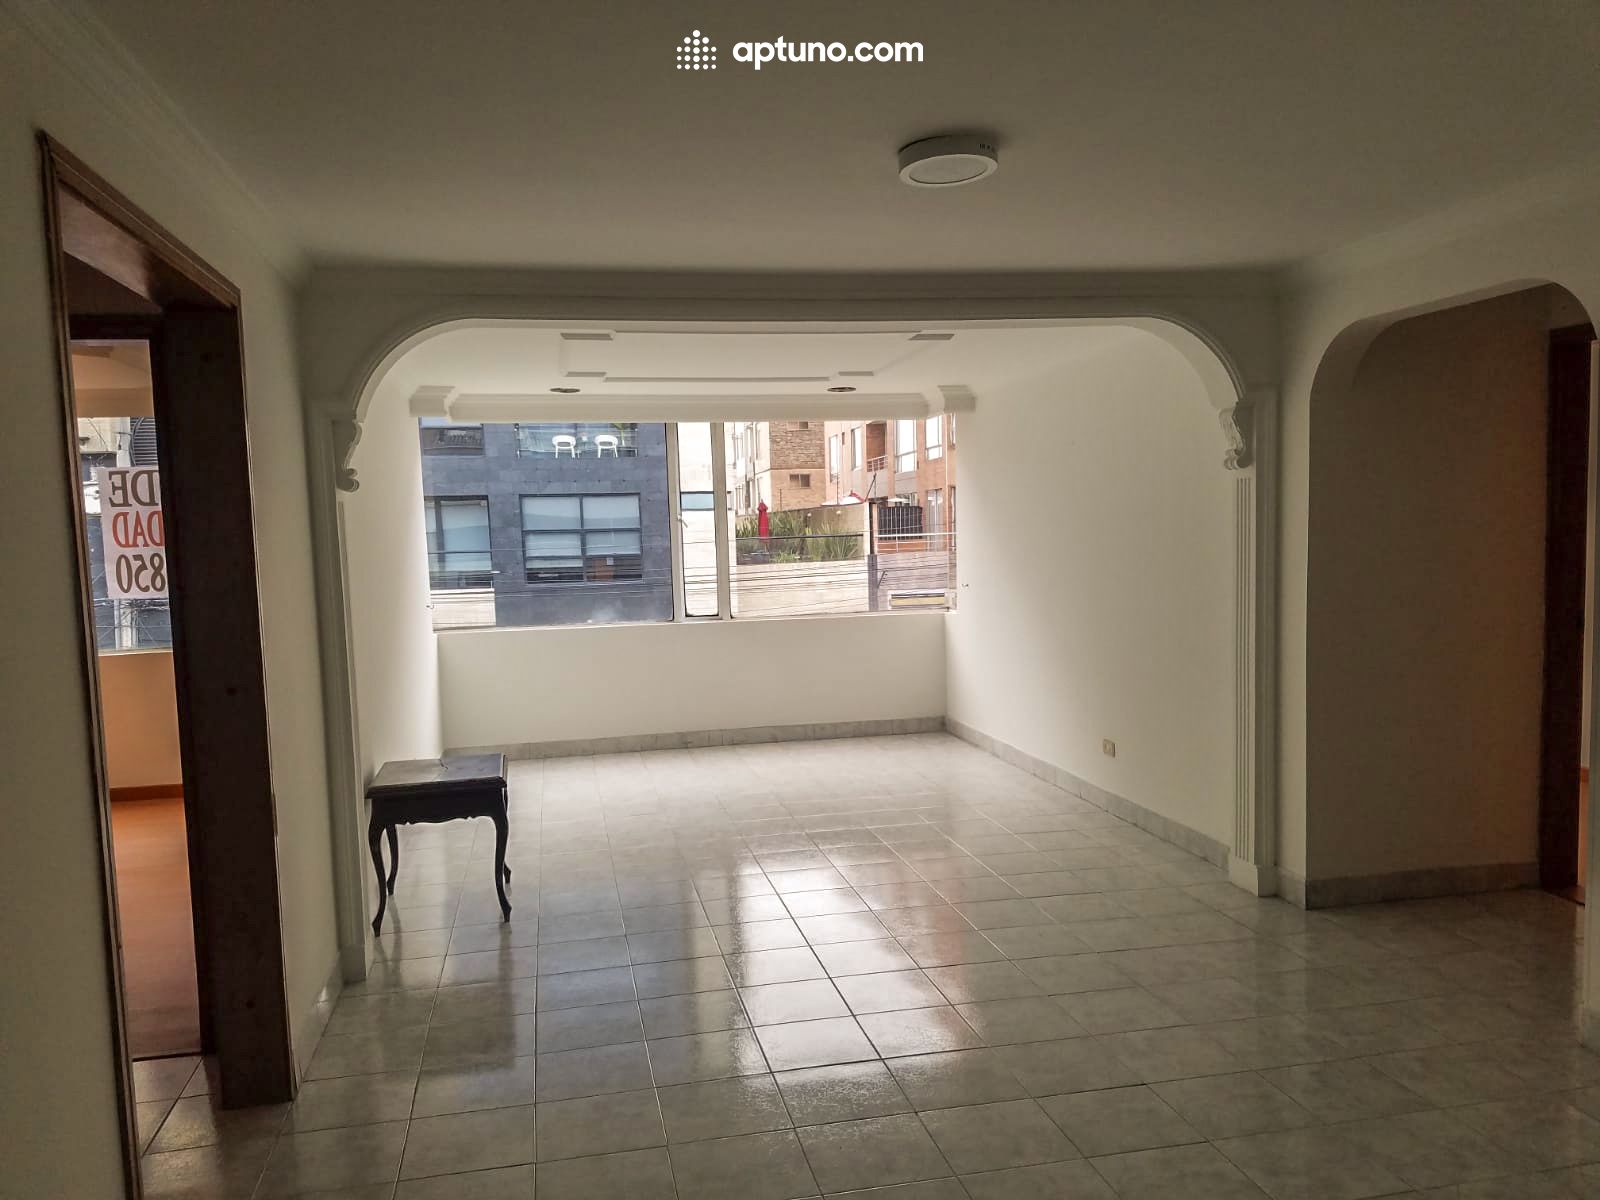 Apartamento en arriendo Santa Bárbara Occidental 145 m² - $ 2.500.000,00